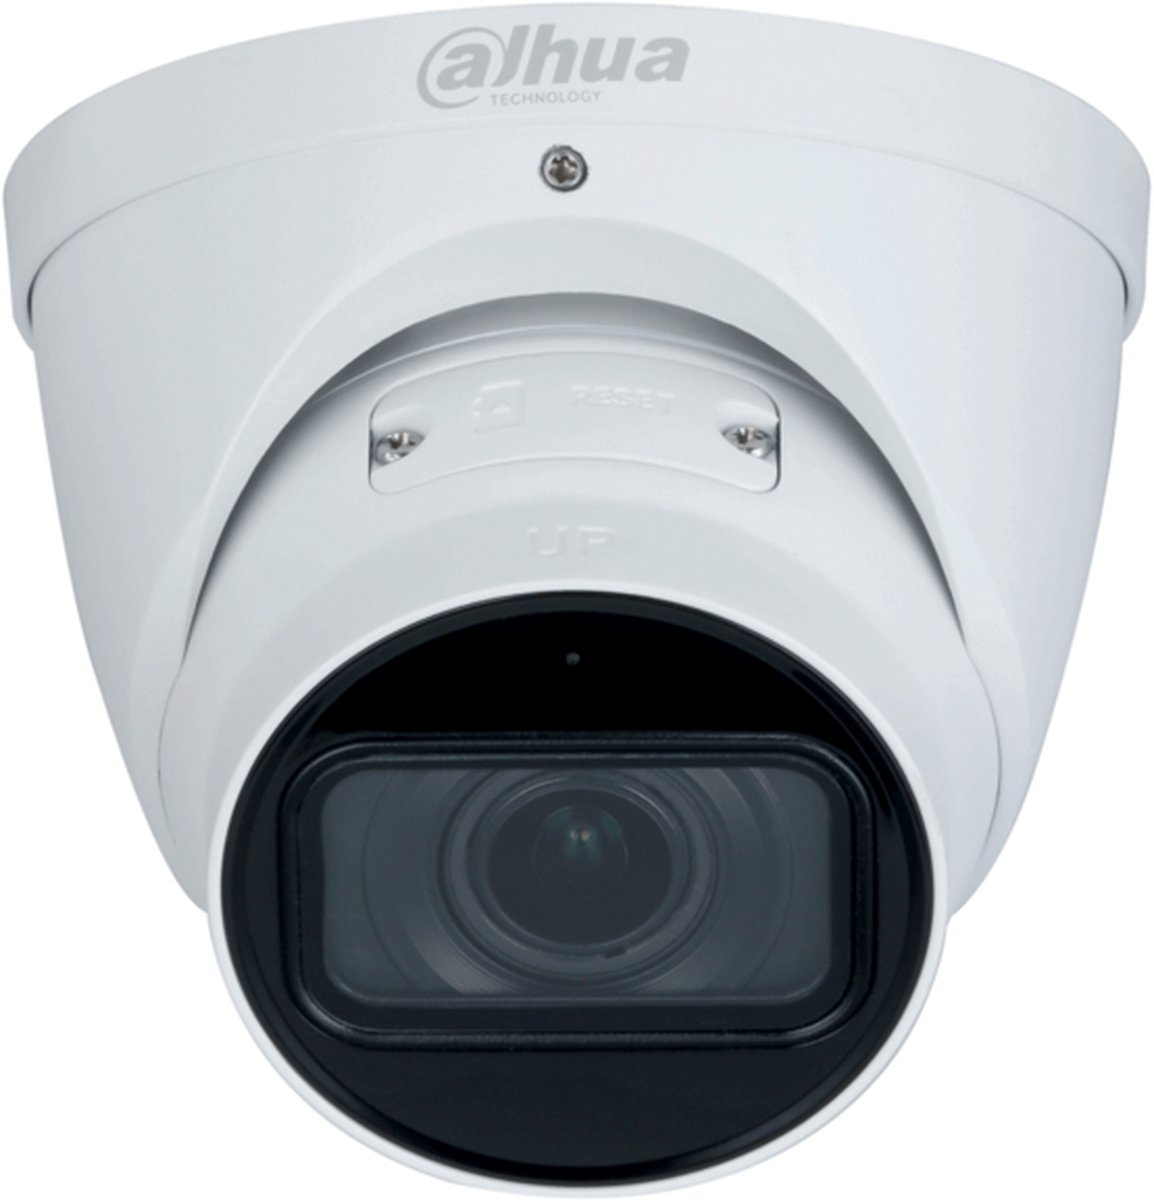 DAHUA - Beveiligings Camera - IP Camera - 4MP - Waterdicht